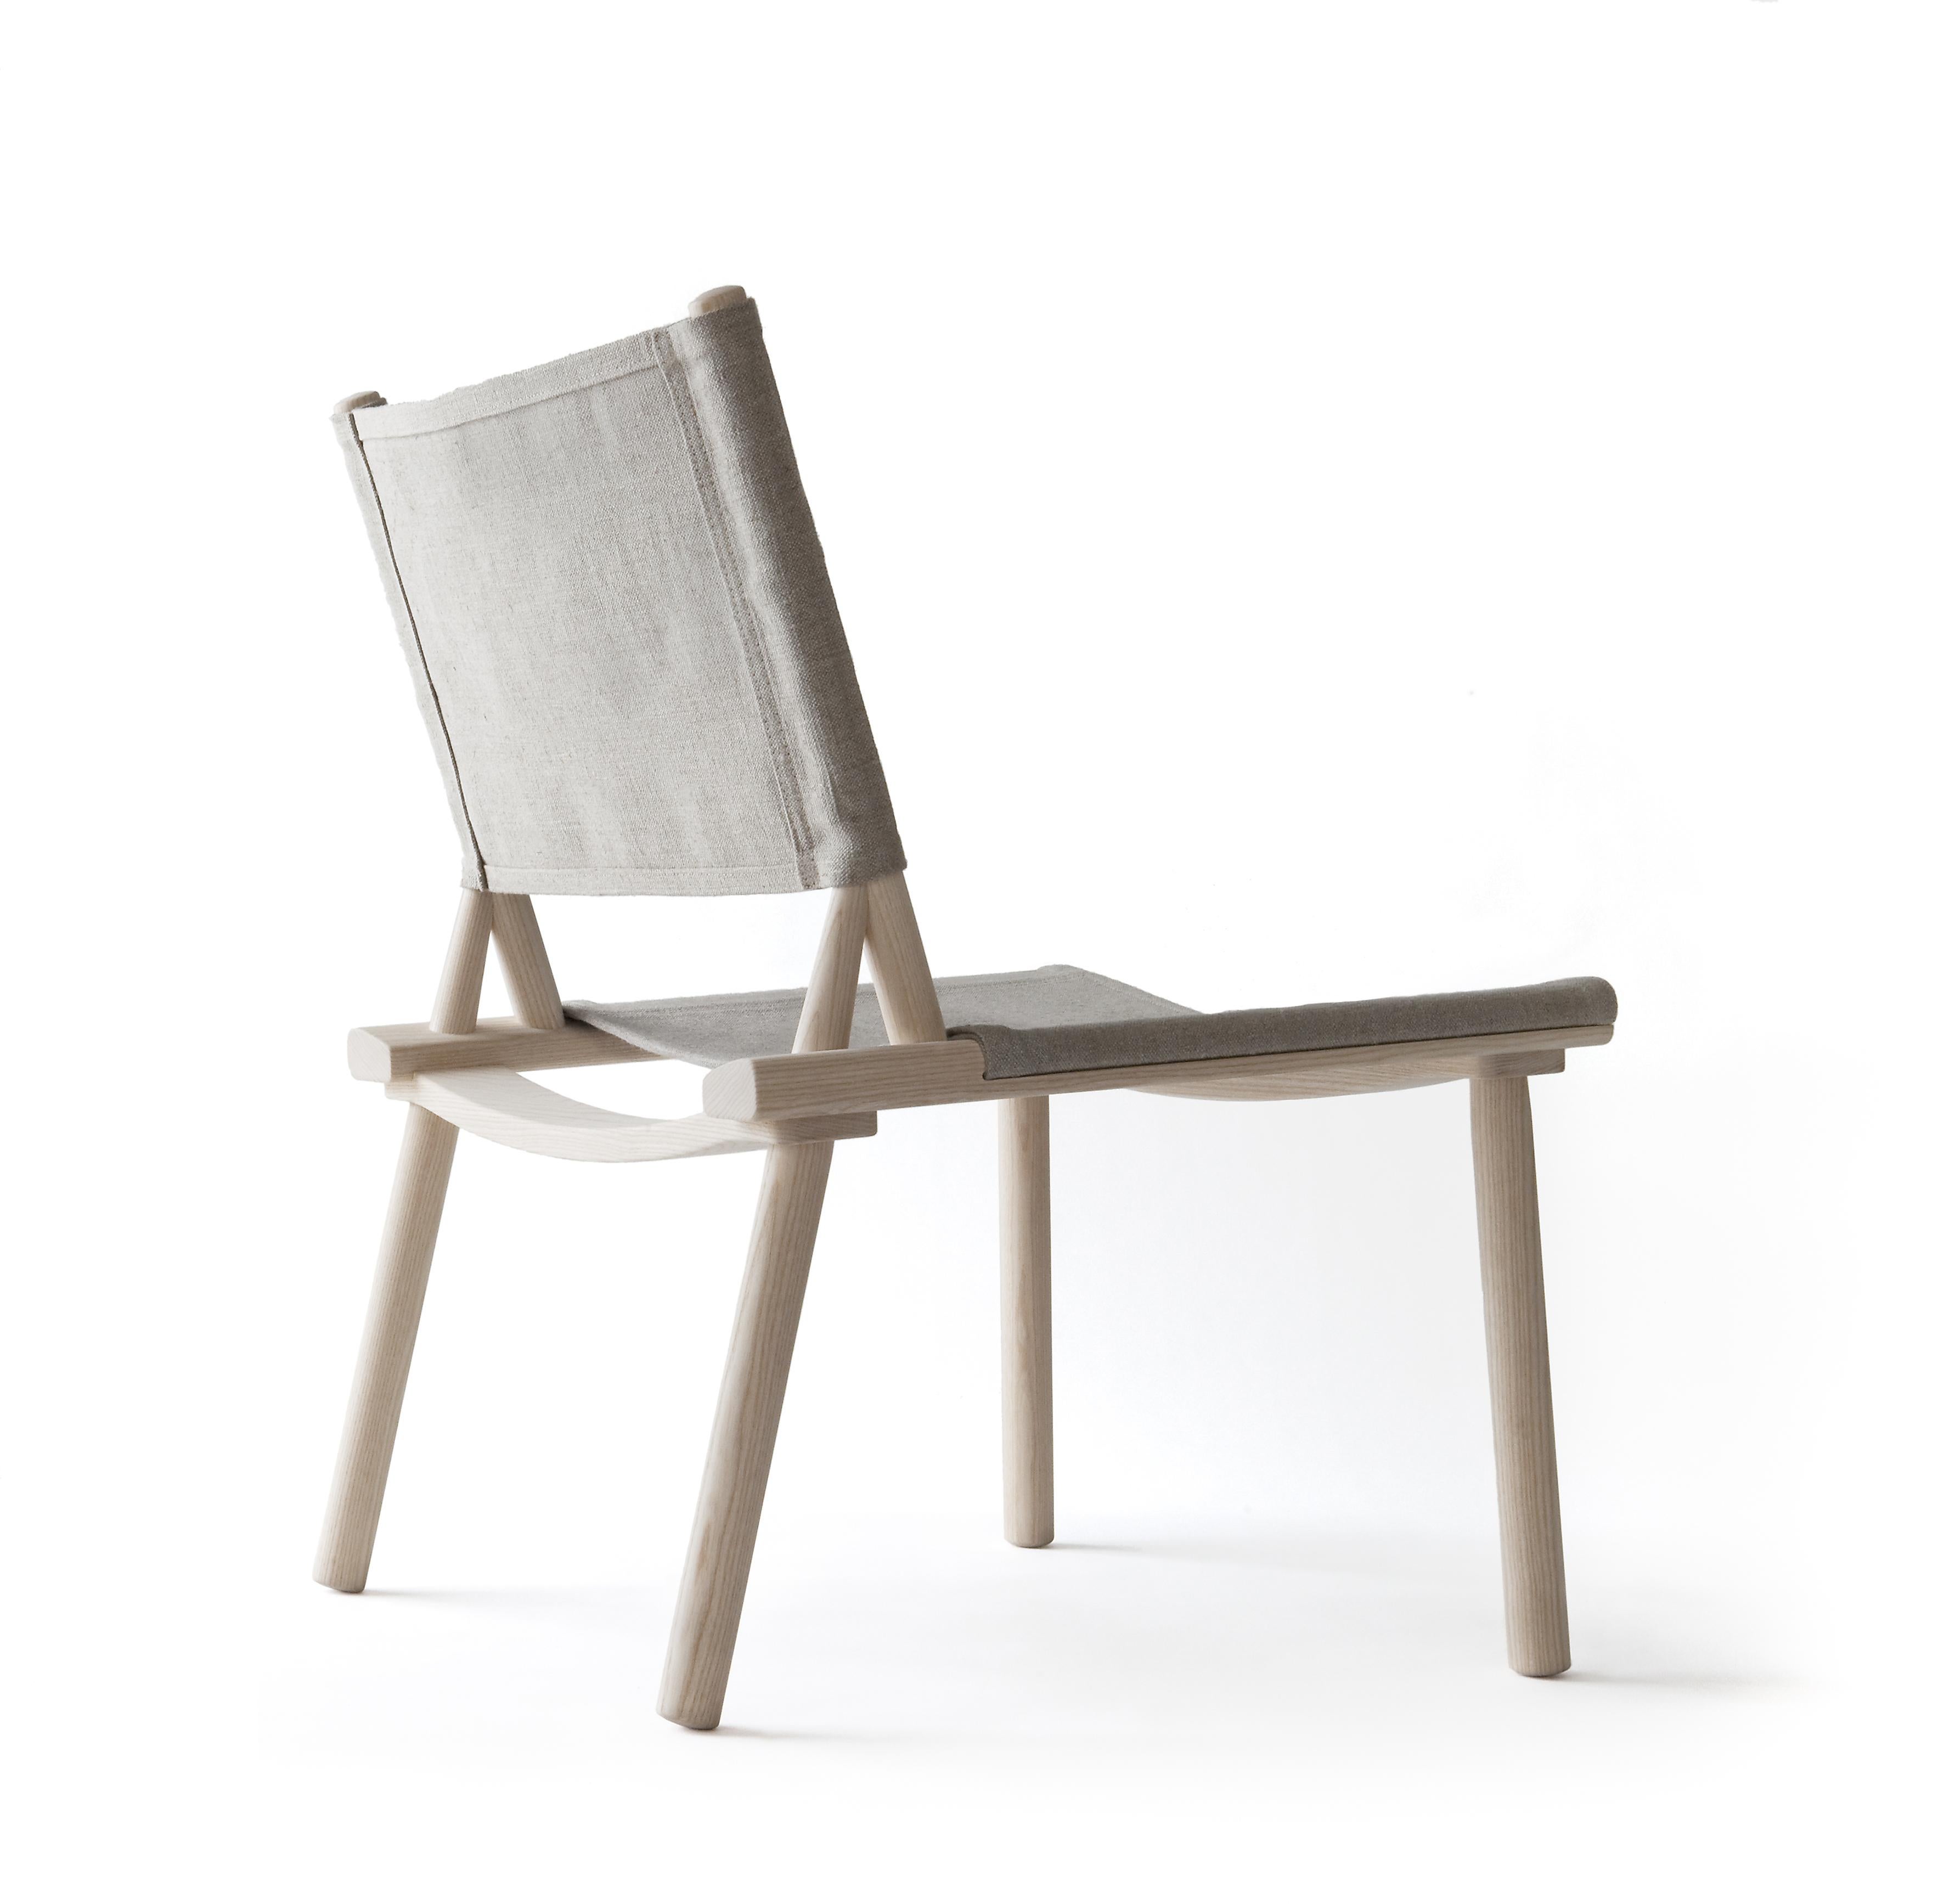 Der Stuhl December wurde von Jasper Morrison und Wataru Kumano entworfen, 2012. Der Stuhl ist leicht und bequem und passt dank seines schlichten, nordischen Designs sowohl zu modernen als auch zu traditionellen Innenräumen.
Erhältlich mit Gestell